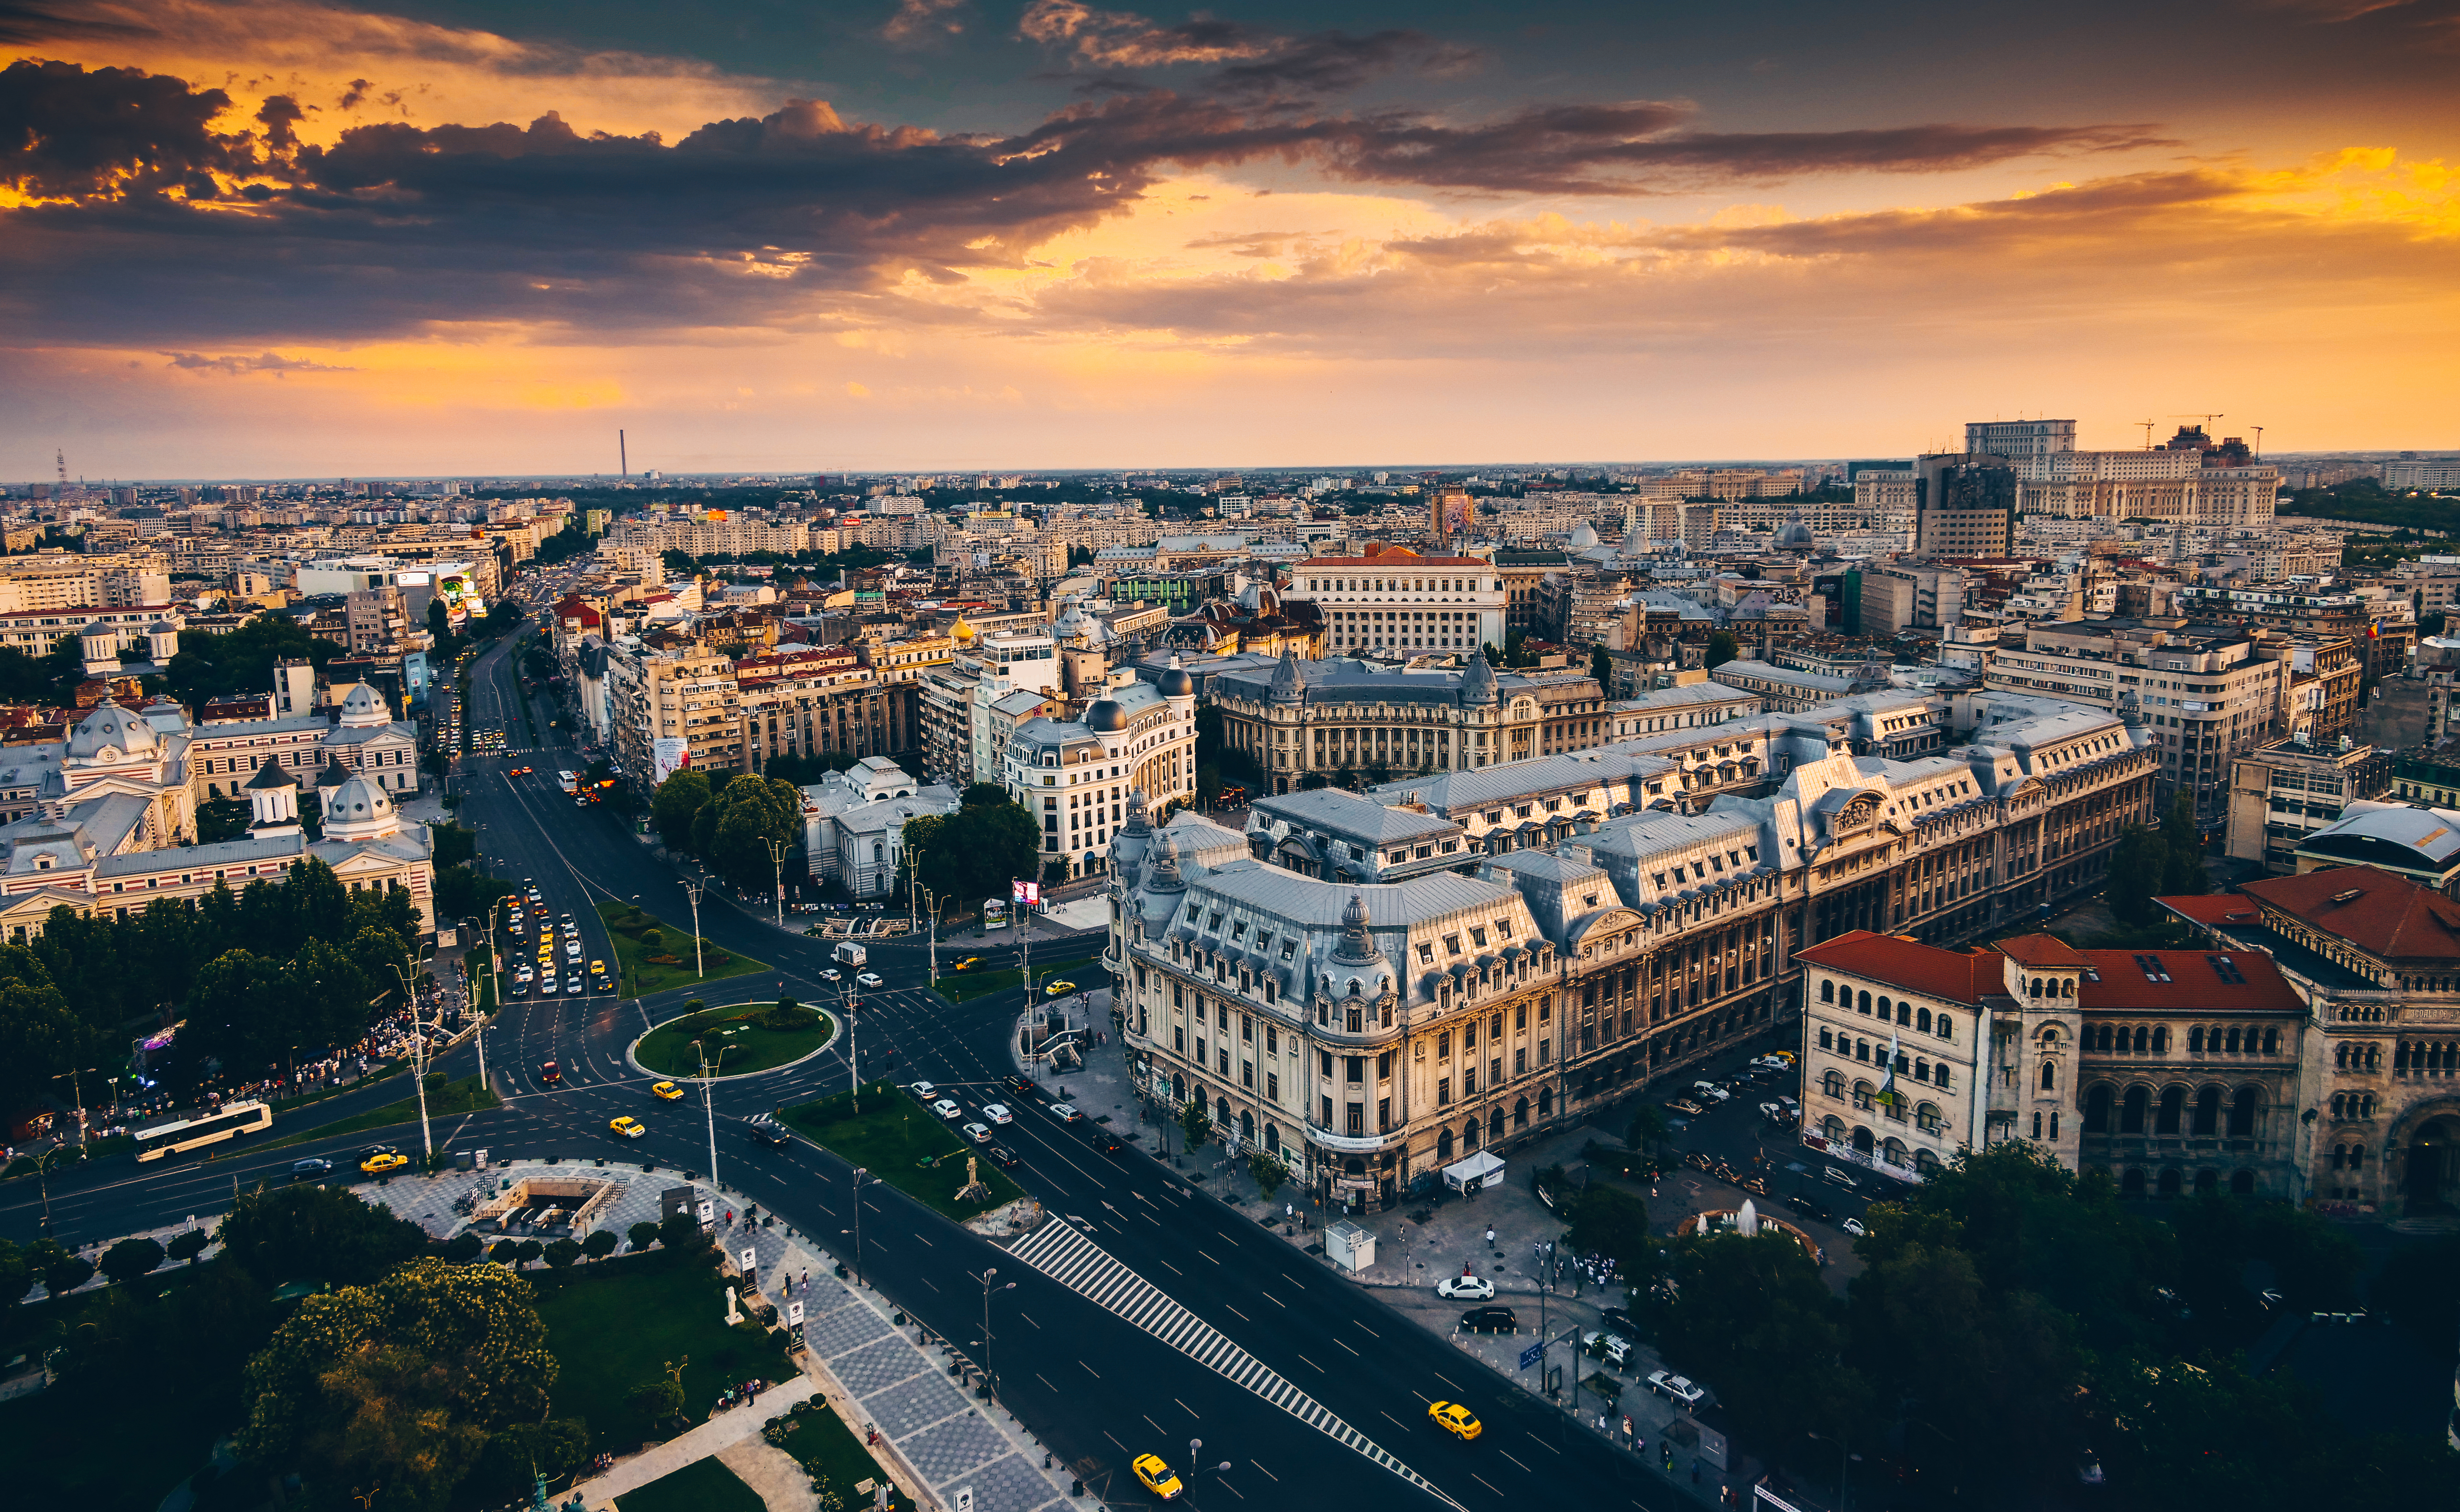 Imobiliare București 2021 - informații, perspective și tendințe - Realkom Imobiliare